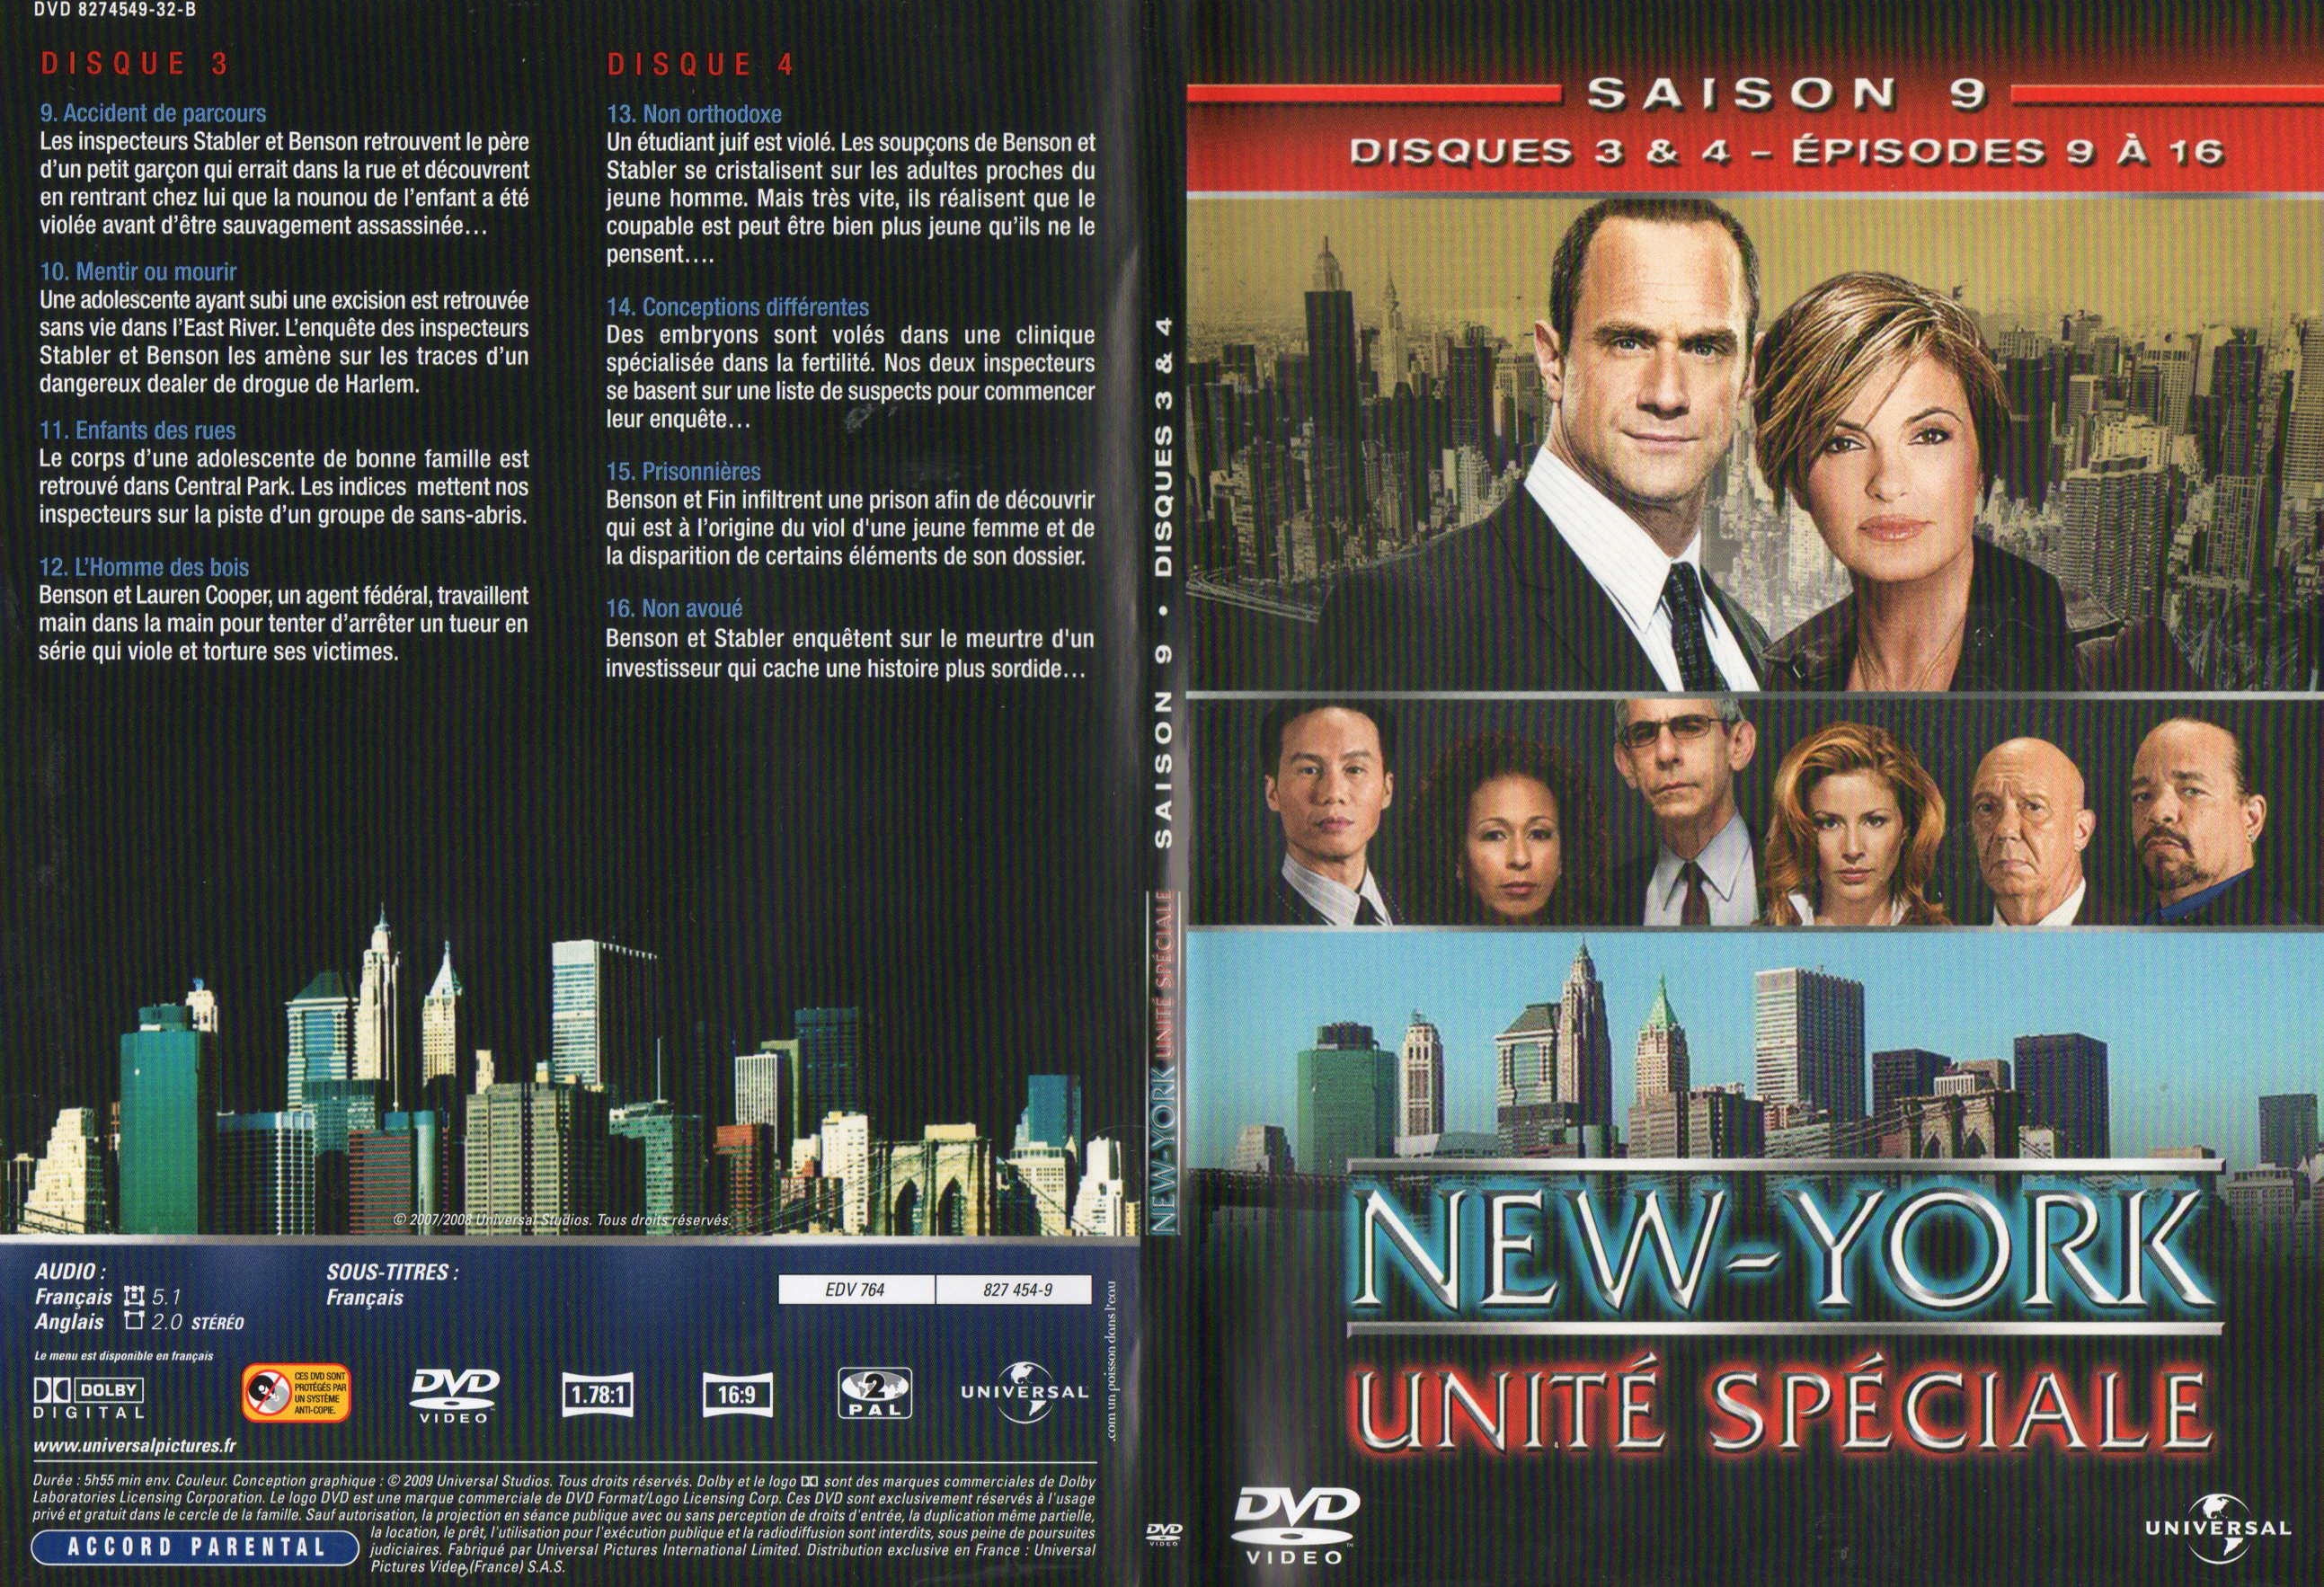 Jaquette DVD New York unit spciale saison 9 DVD 2